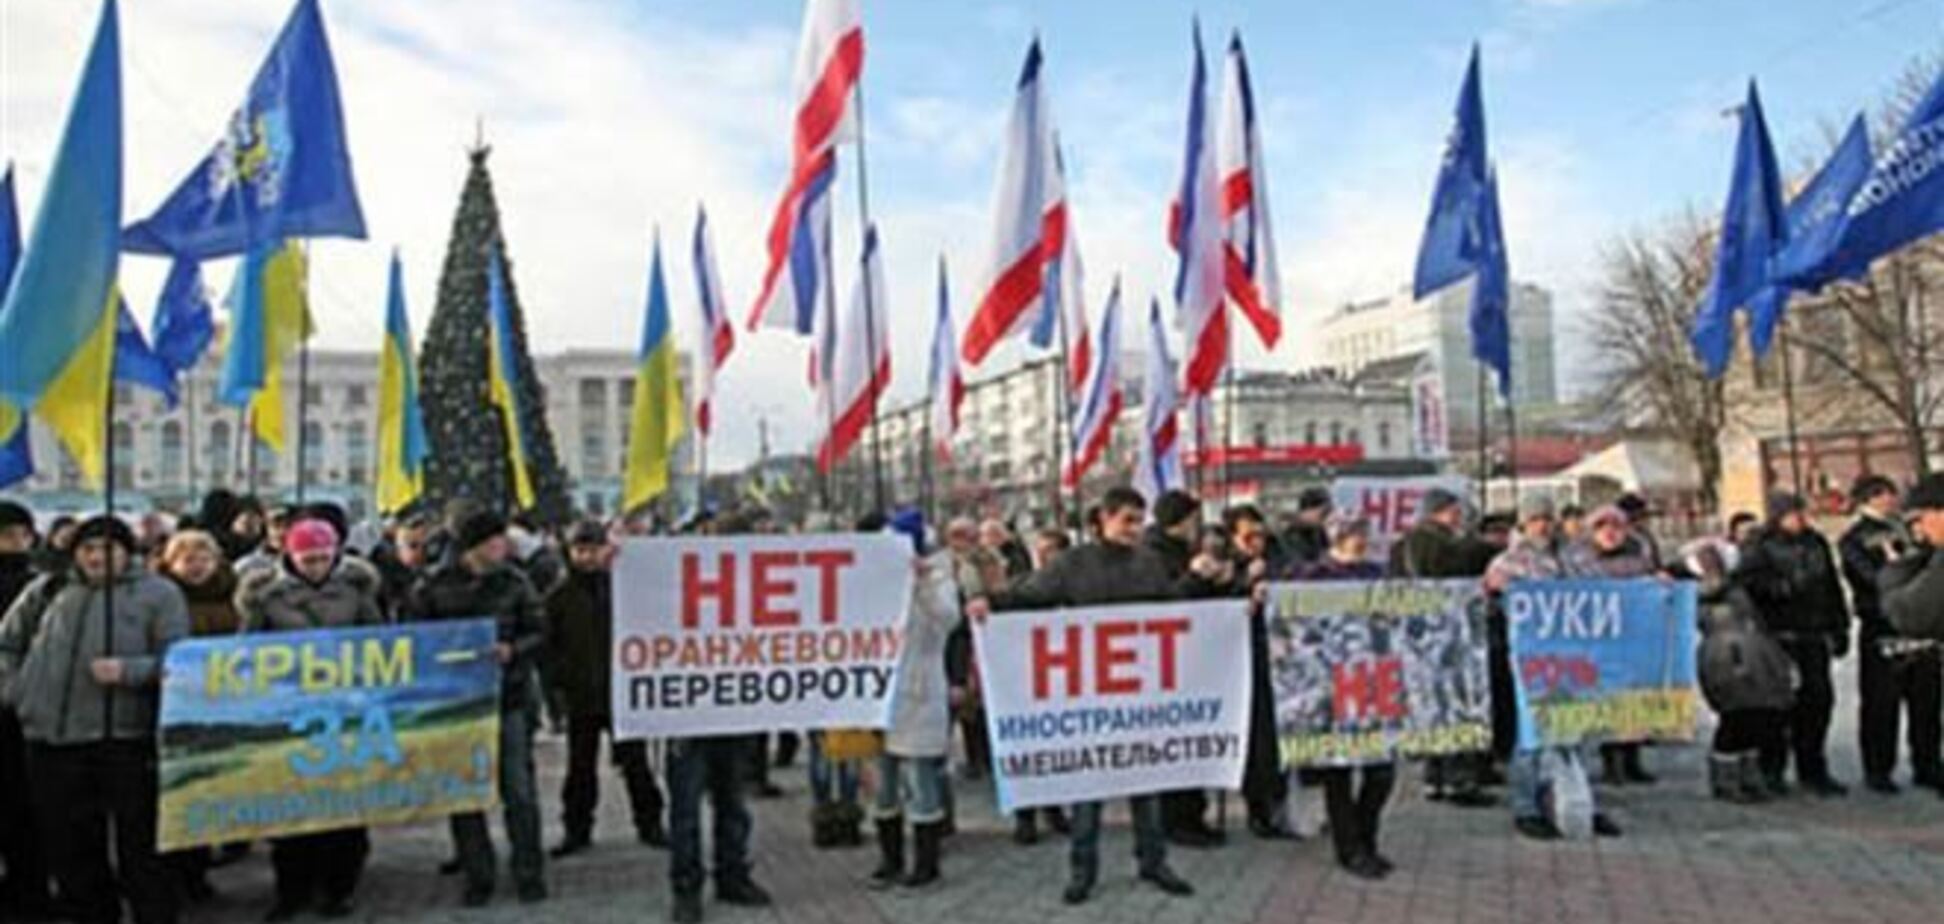 Колона з прапорами Криму і Партії регіонів йде на мітинг в Маріїнський парк